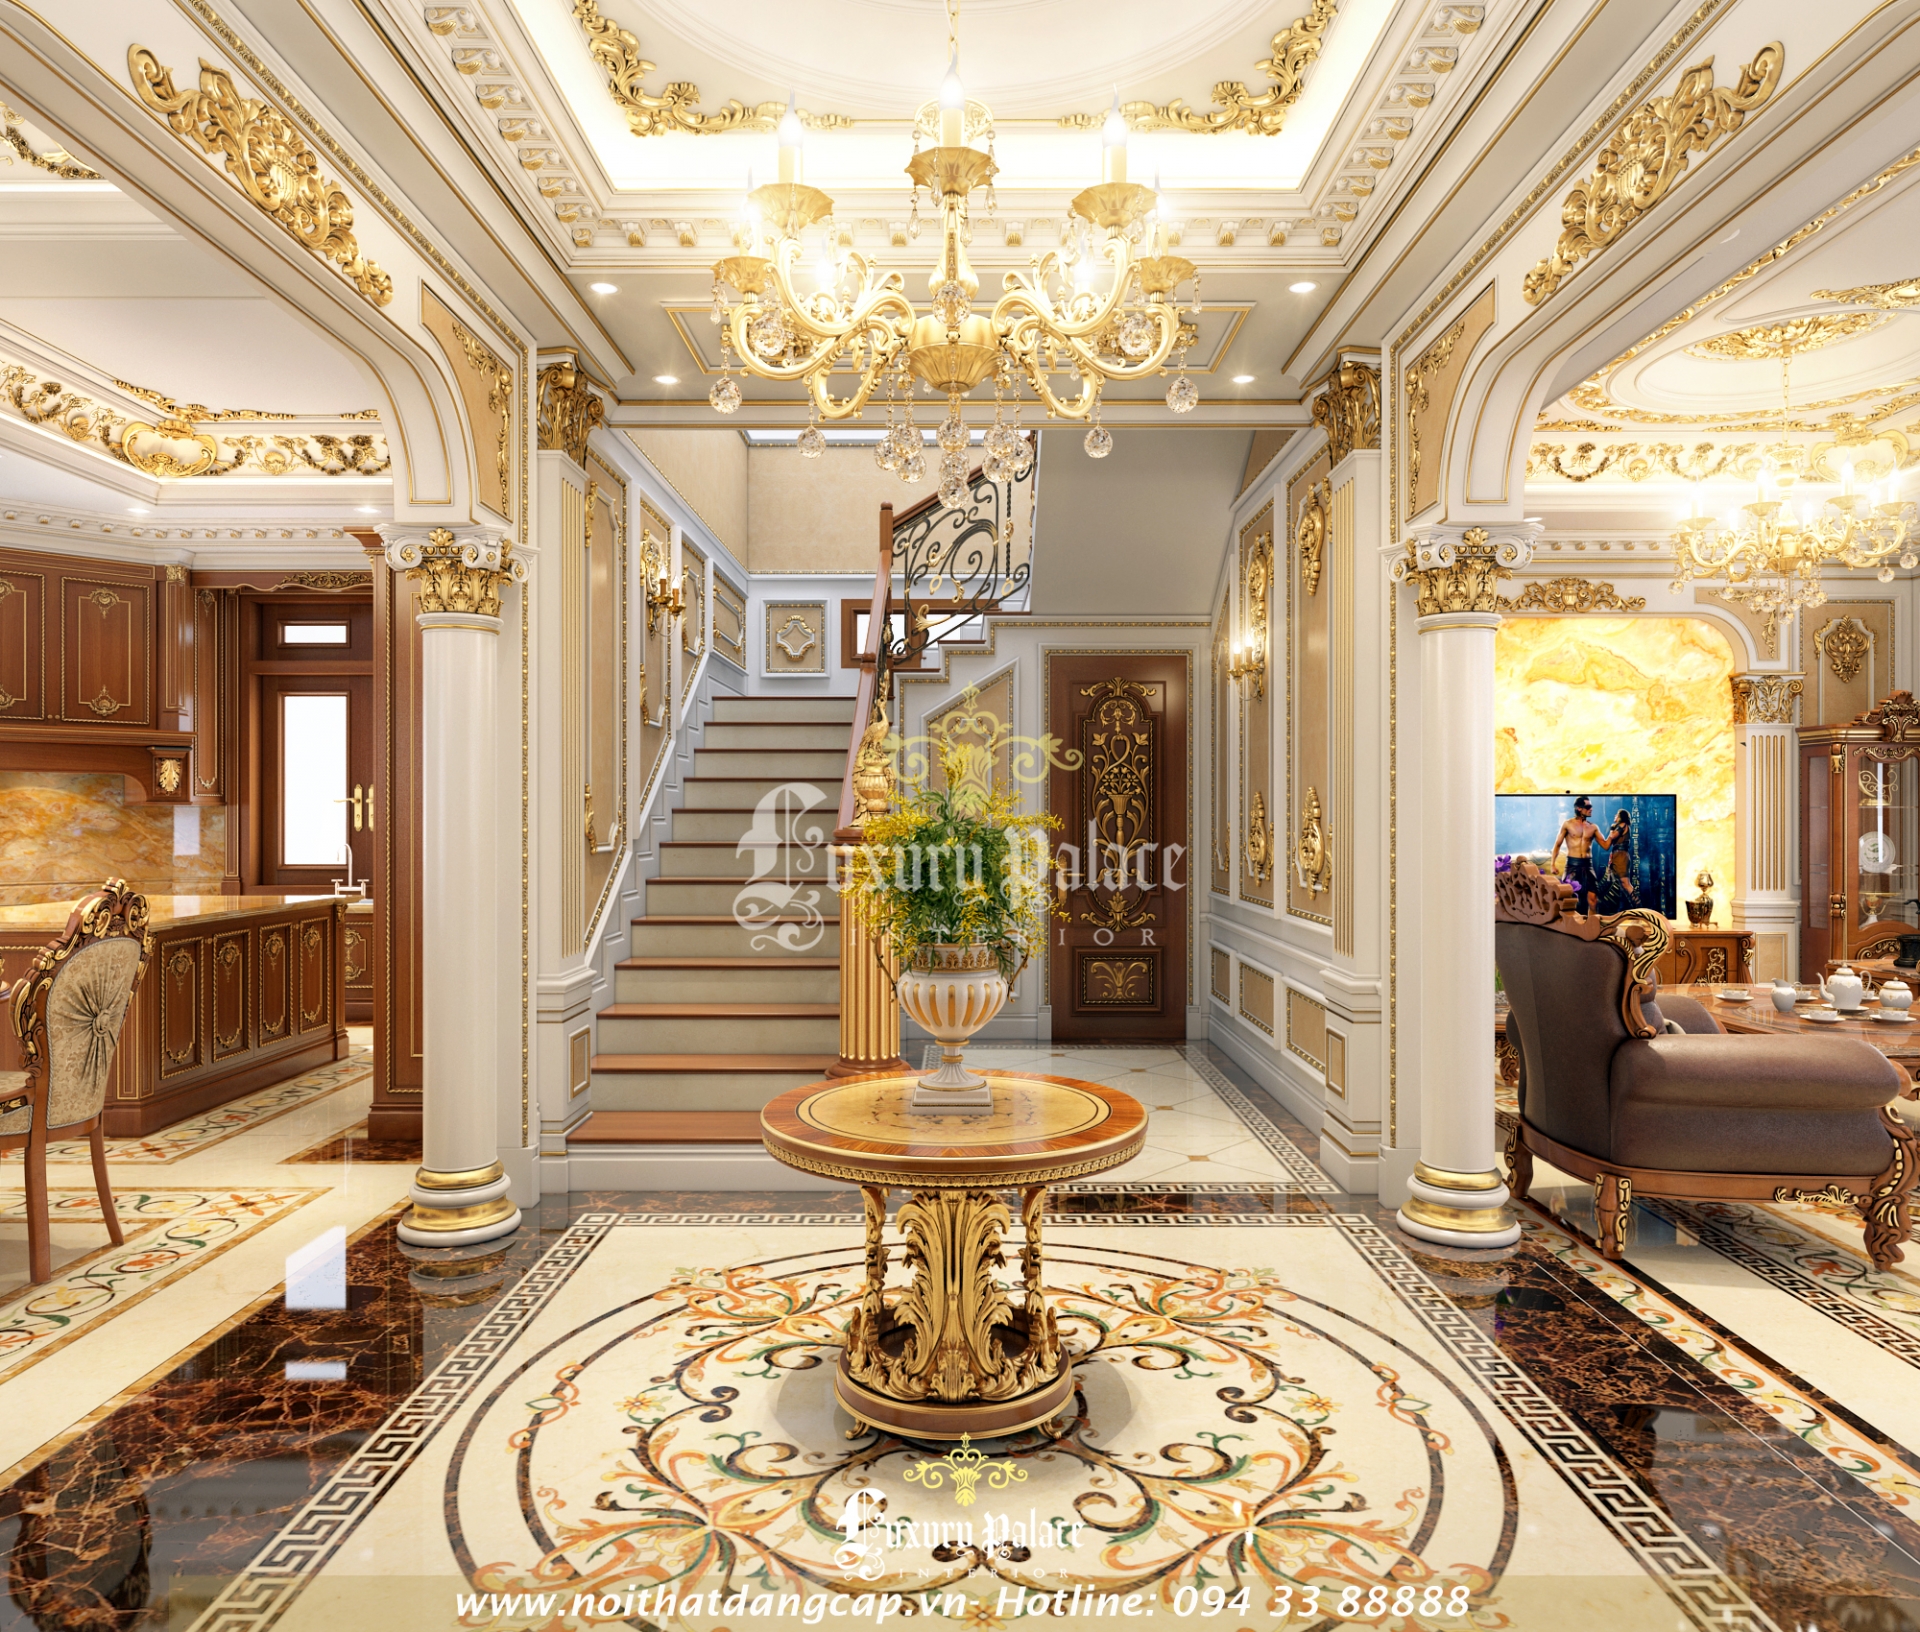 Nội thất phòng khách biệt thự Lạng Sơn Luxury Palace thi công